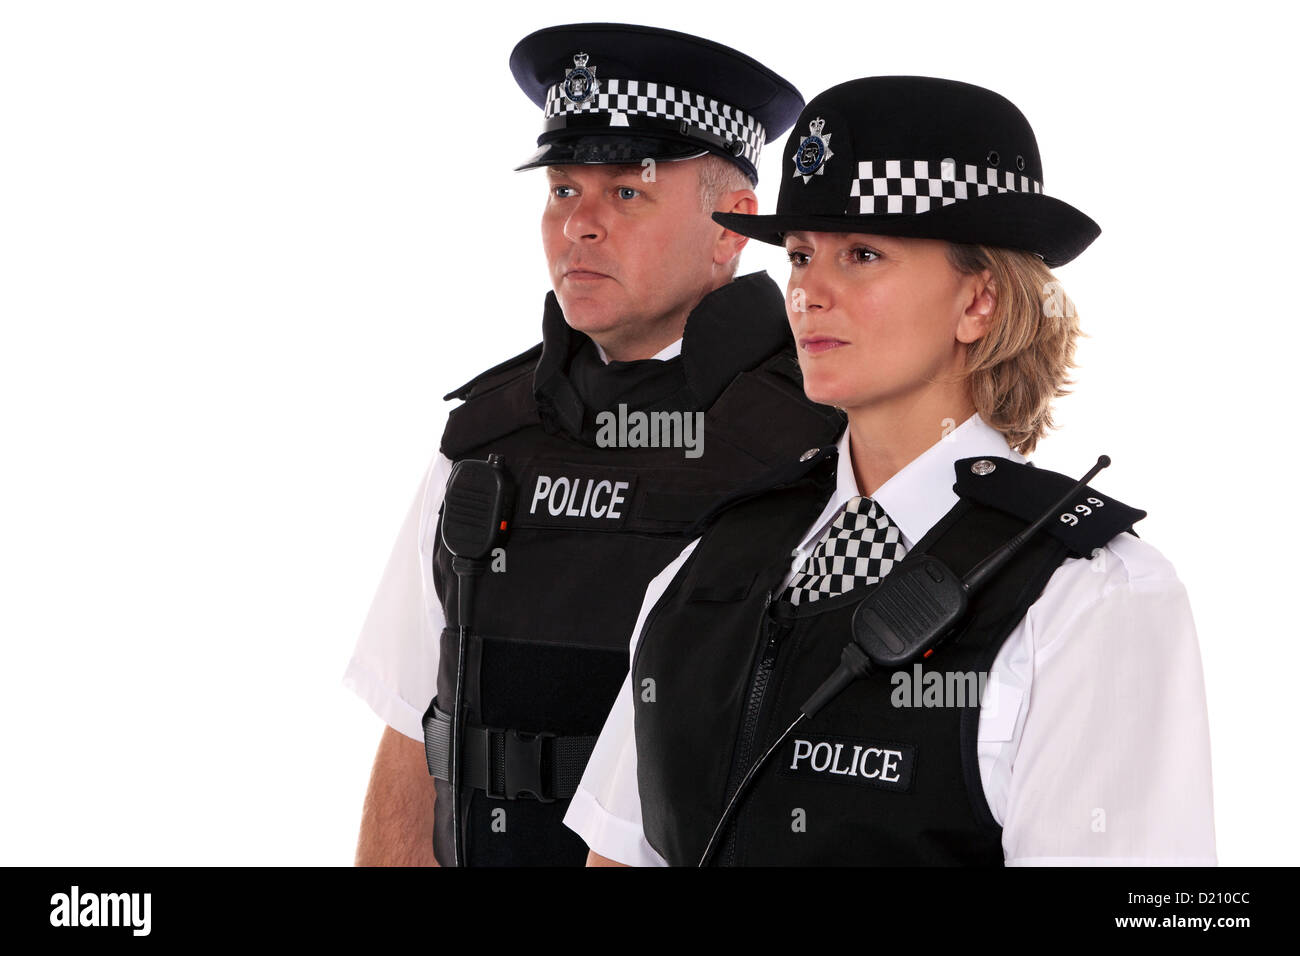 Studioaufnahme von männlichen und weiblichen britische Polizisten in Uniform mit Körper Rüstung. Stockfoto